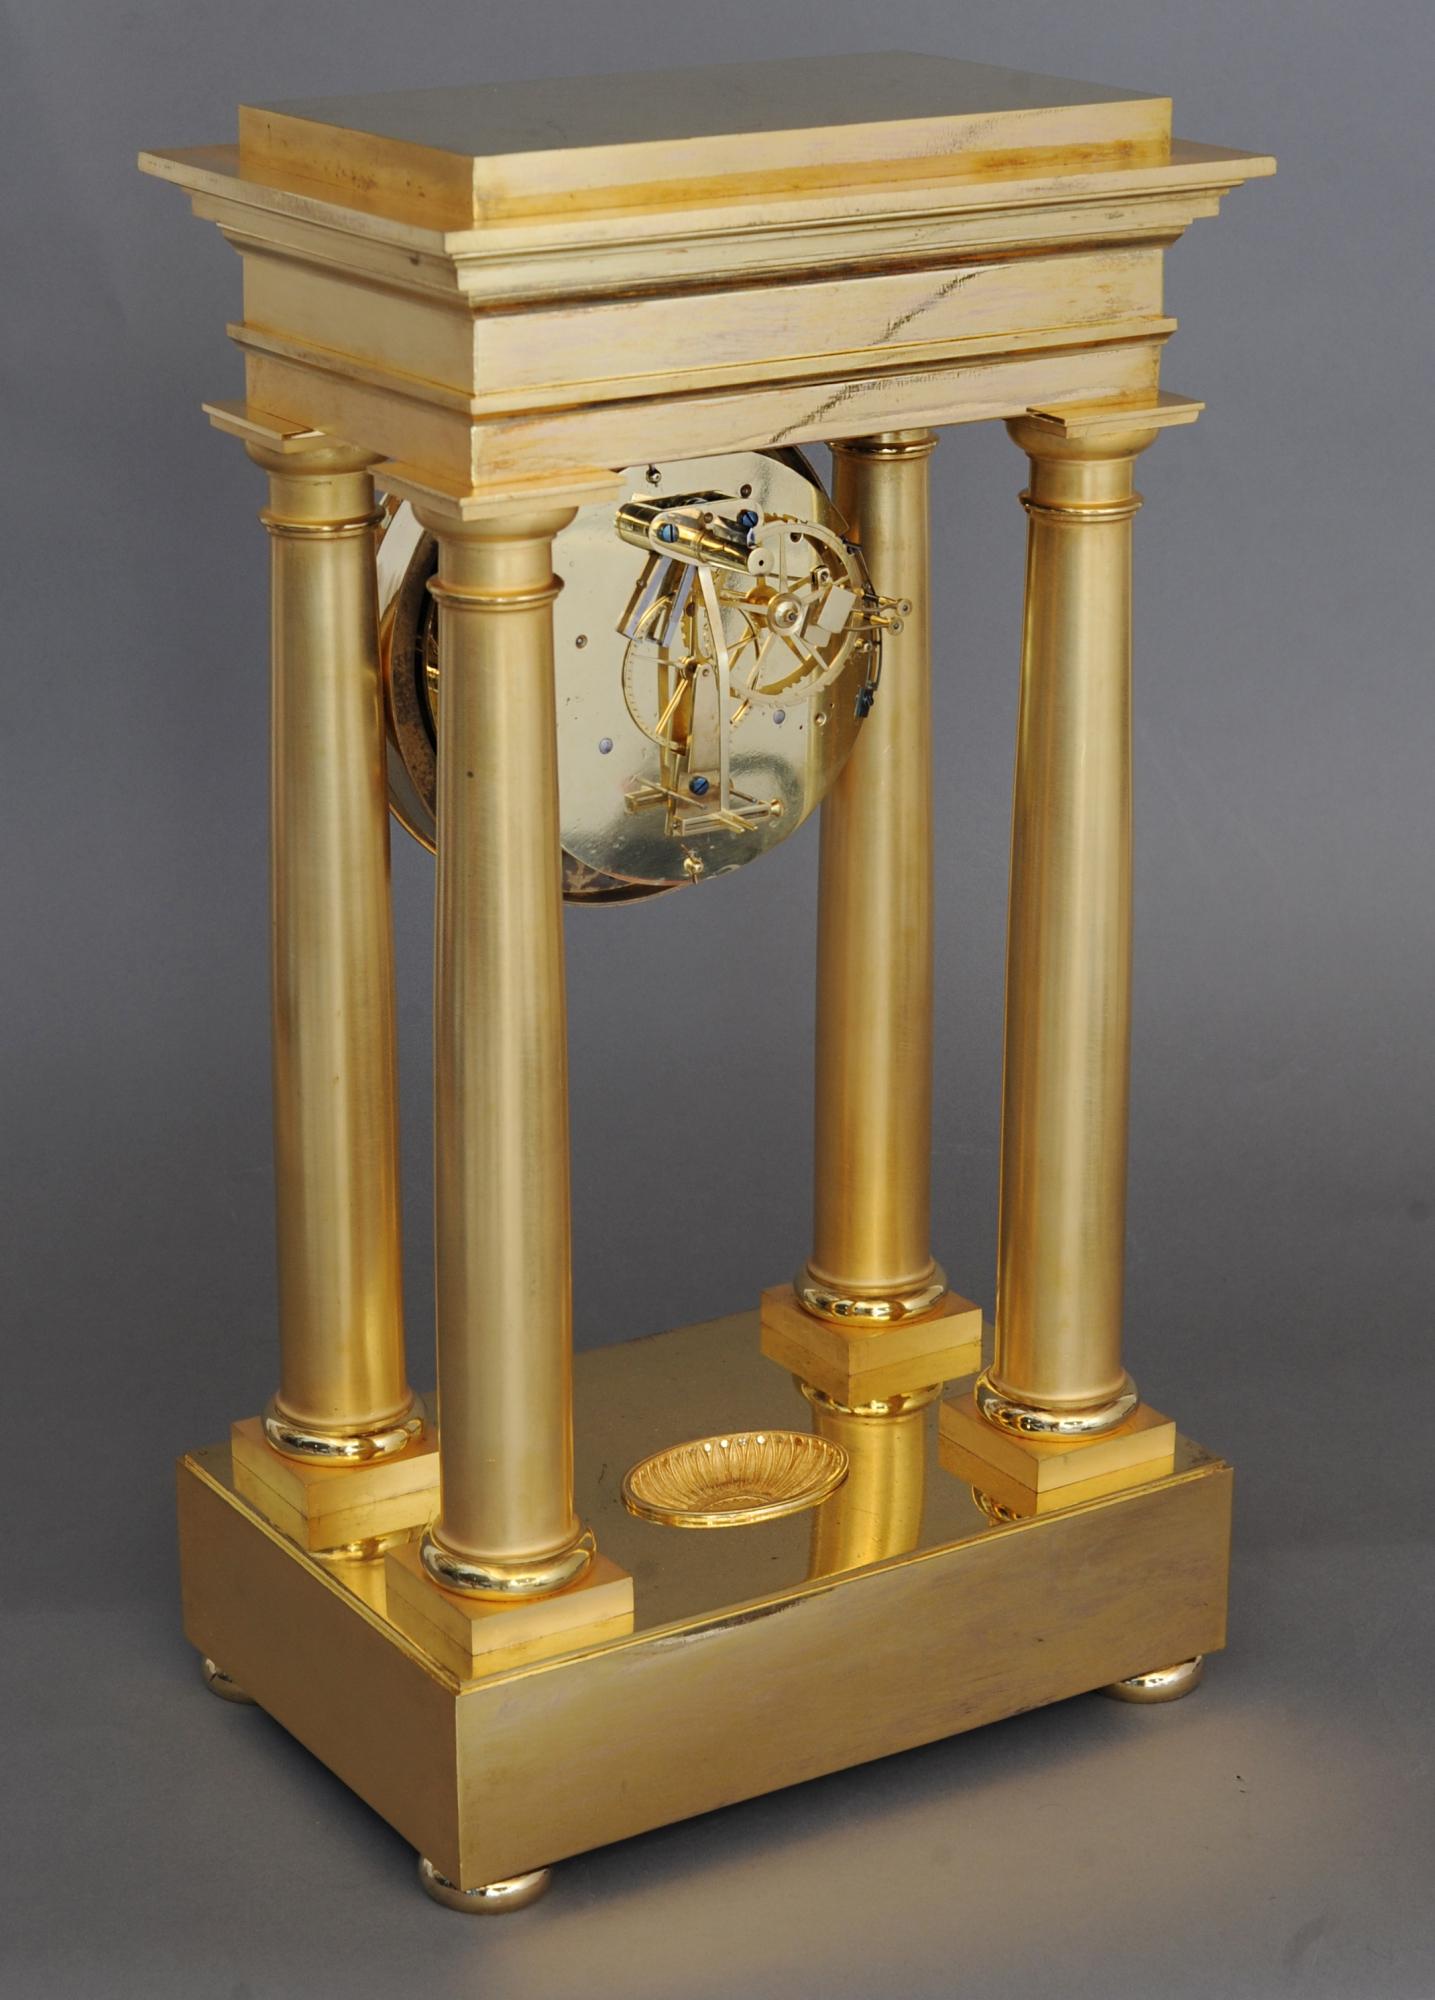 Pendule de cheminée à régulateur de précision à quatre piliers, de très haute qualité, datant du début de l'Empire. Cette horloge de grande qualité a été fabriquée par le célèbre horloger Dieudonné Kinable, vers 1800. Mouvement à échappement à roue